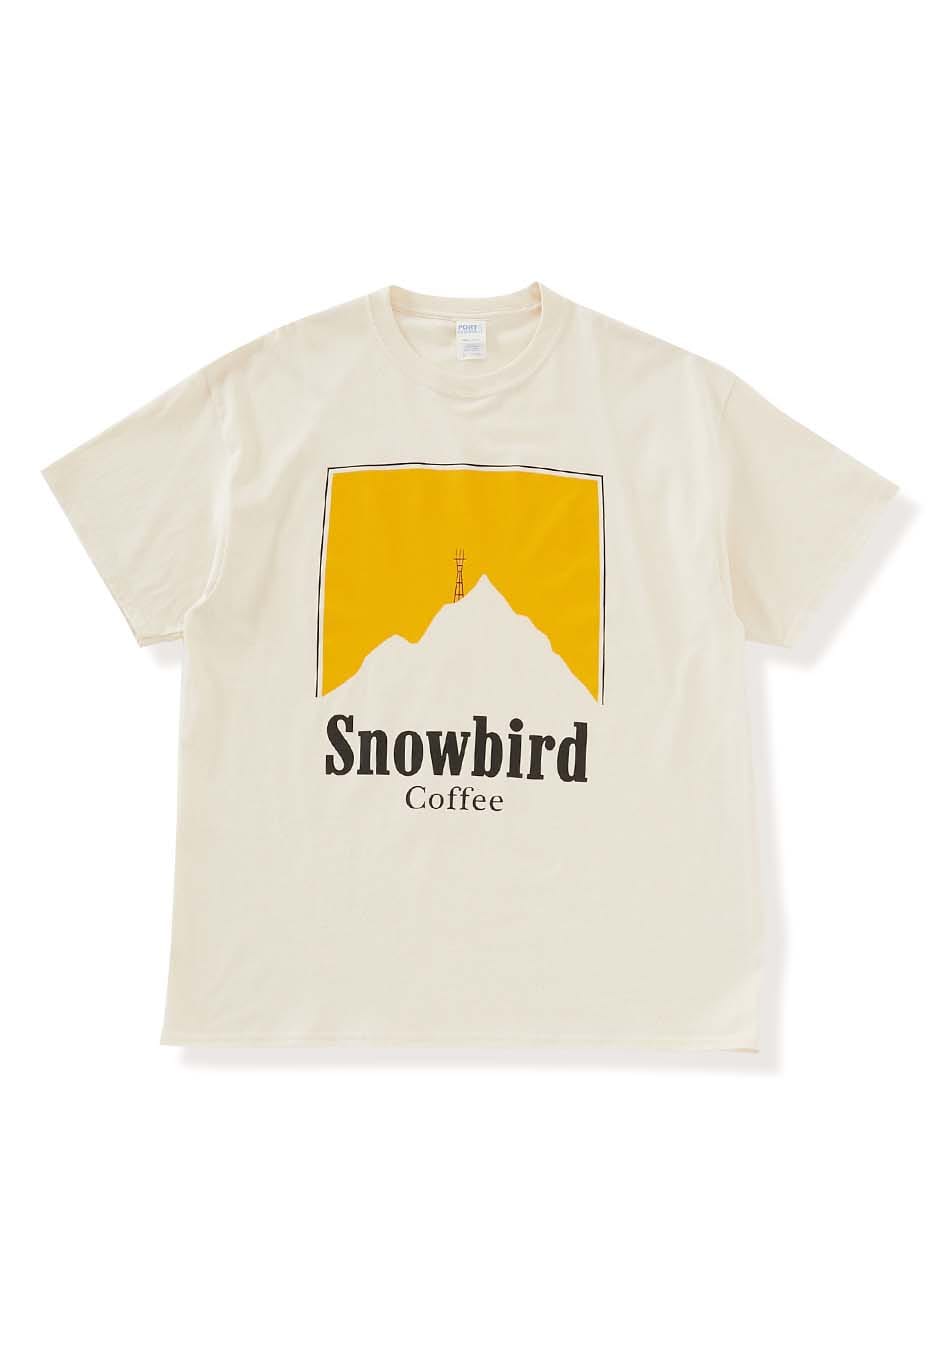 SNOWBIRD COFFEE TWIN PEAKS Tシャツ